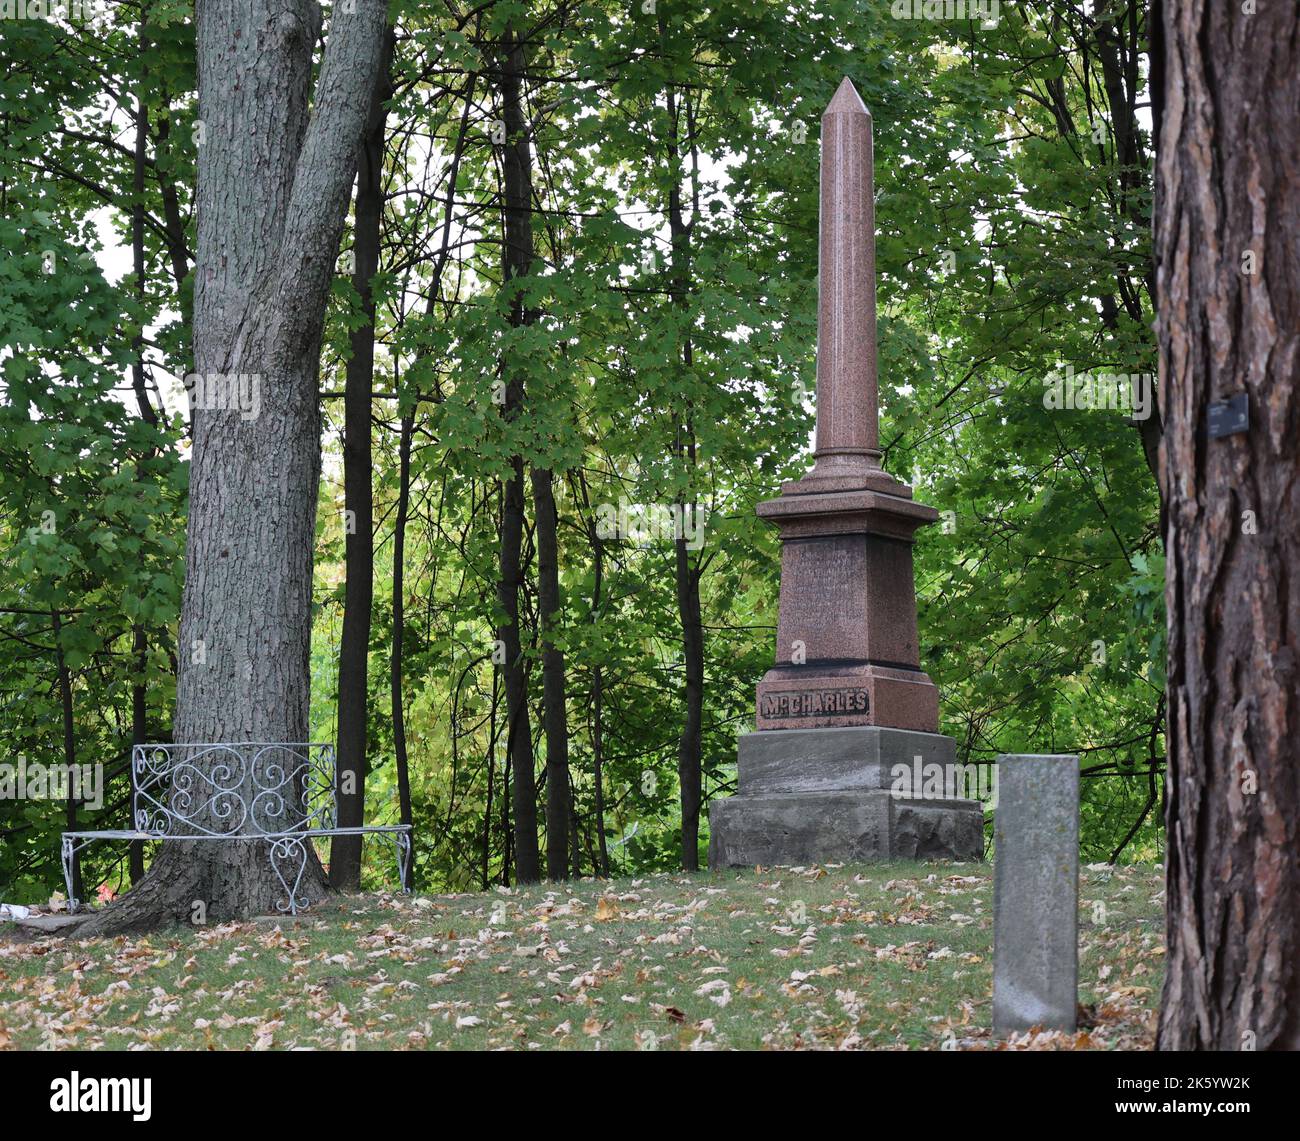 Ein großer Obelisk und ein kleiner Grabstein sitzen auf einem Hügel, umgeben von großen Bäumen. Der Herbst hinterlässt auf dem Boden. Ruhig und besinnlich Stockfoto